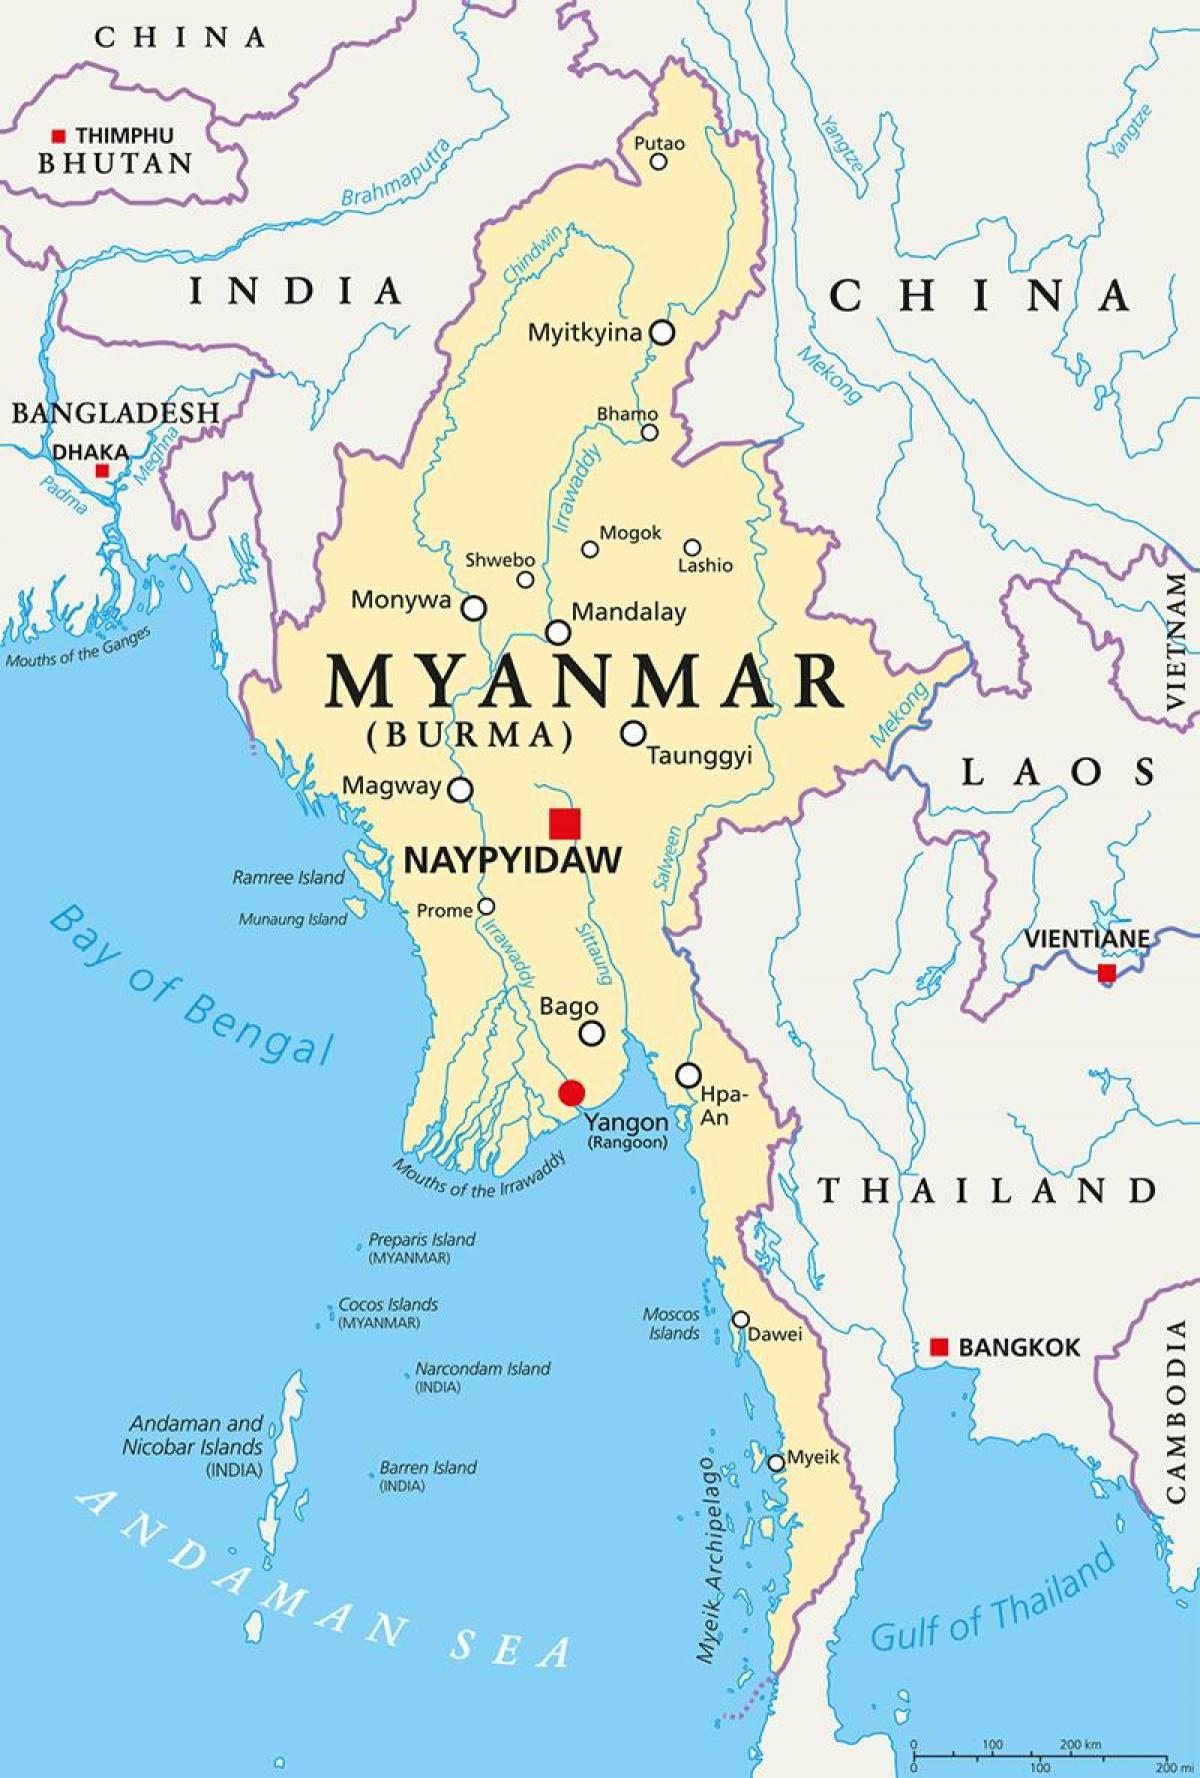 Bản đồ Miến Điện - Myanmar:
Đất nước Myanmar nổi tiếng với những di sản văn hóa, tôn giáo và lịch sử phong phú. Với bản đồ Miến Điện - Myanmar, bạn sẽ cảm nhận được sự đa dạng và phong phú của đất nước Myanmar, từ vùng đồng bằng sông Irawaddy đến cao nguyên Shan, từ Bagan với những tháp đền cổ kính đến Mandalay với lâu đài hoành tráng.